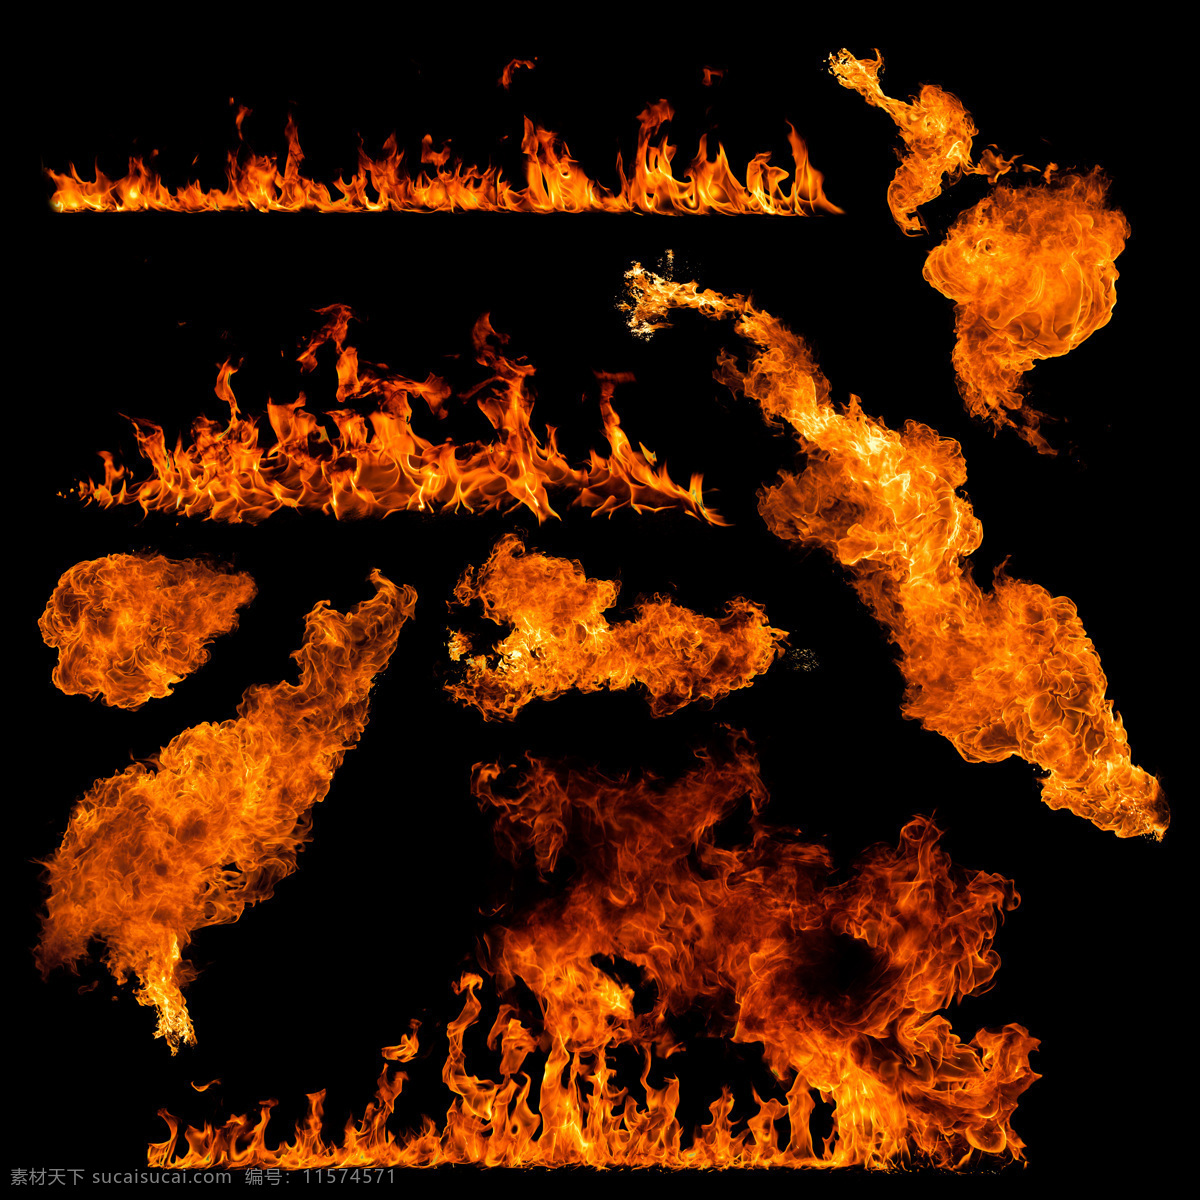 篝火 火苗 火焰 背景 黑色 晚上 大伙 柴火 燃烧 炭火 烤火 火焰素材 火素材 篝火素材 生活百科 生活素材